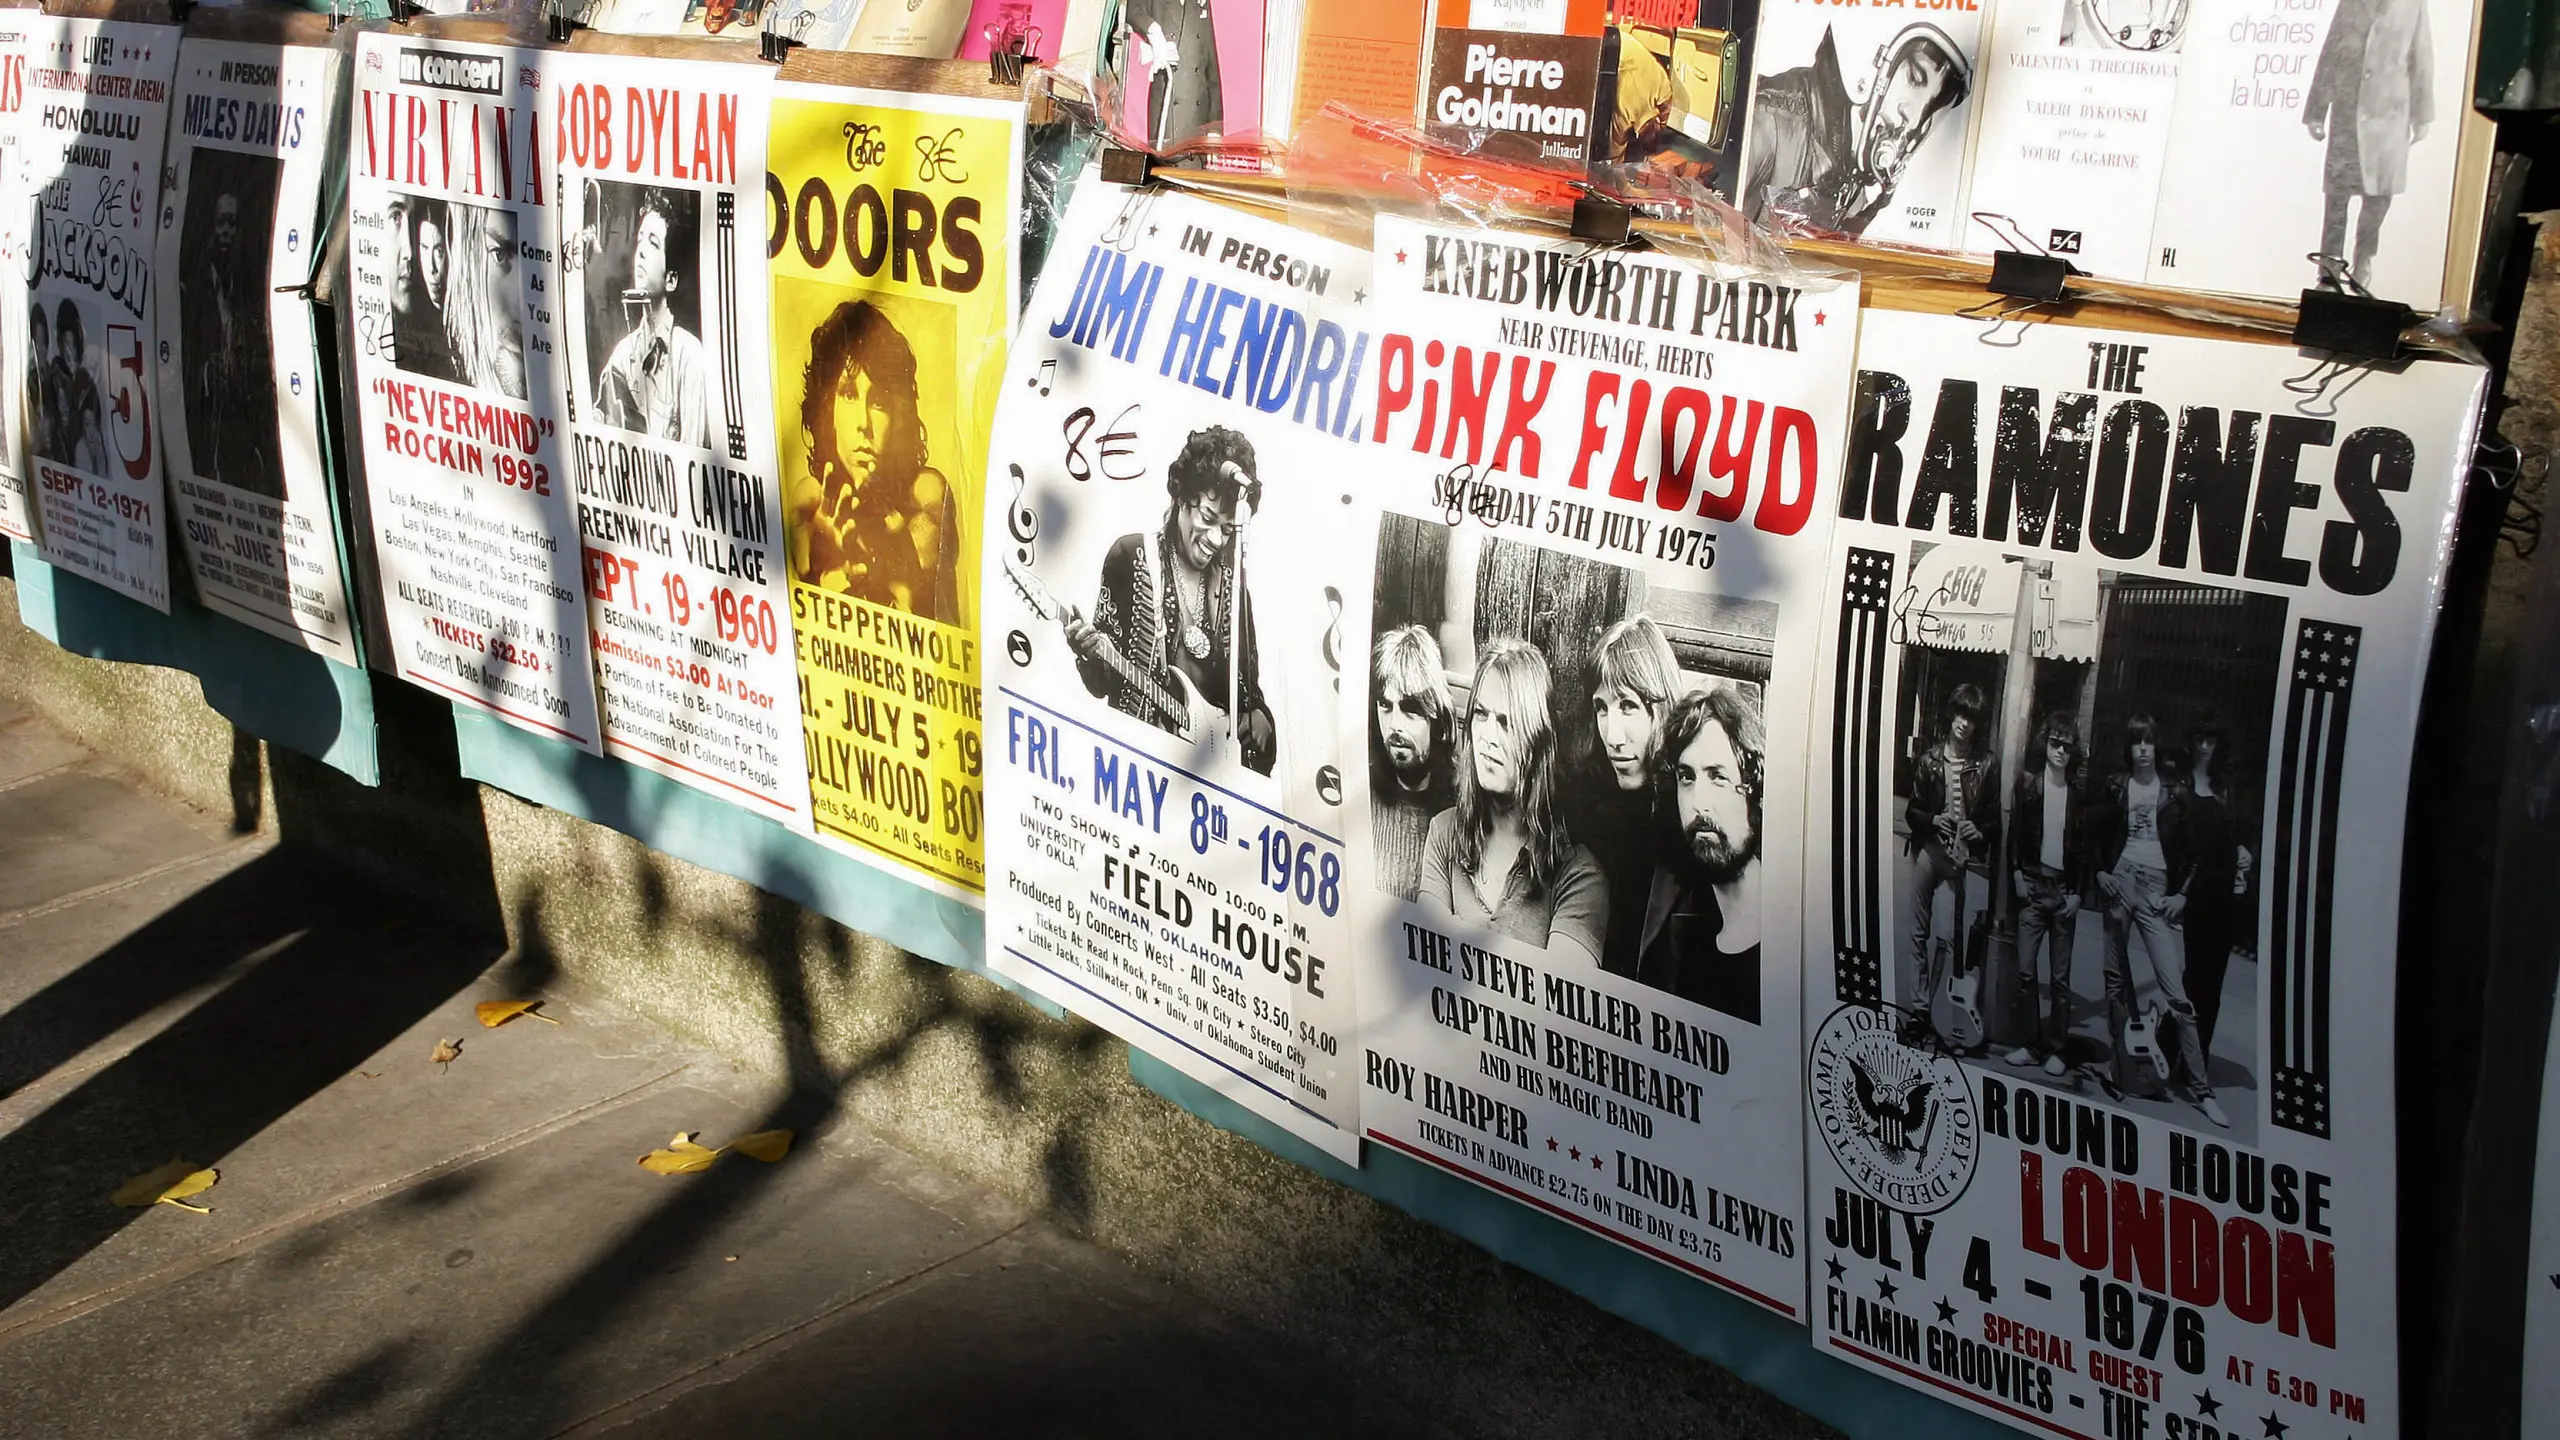 Werbeplakate für die verschiedenen Bands.